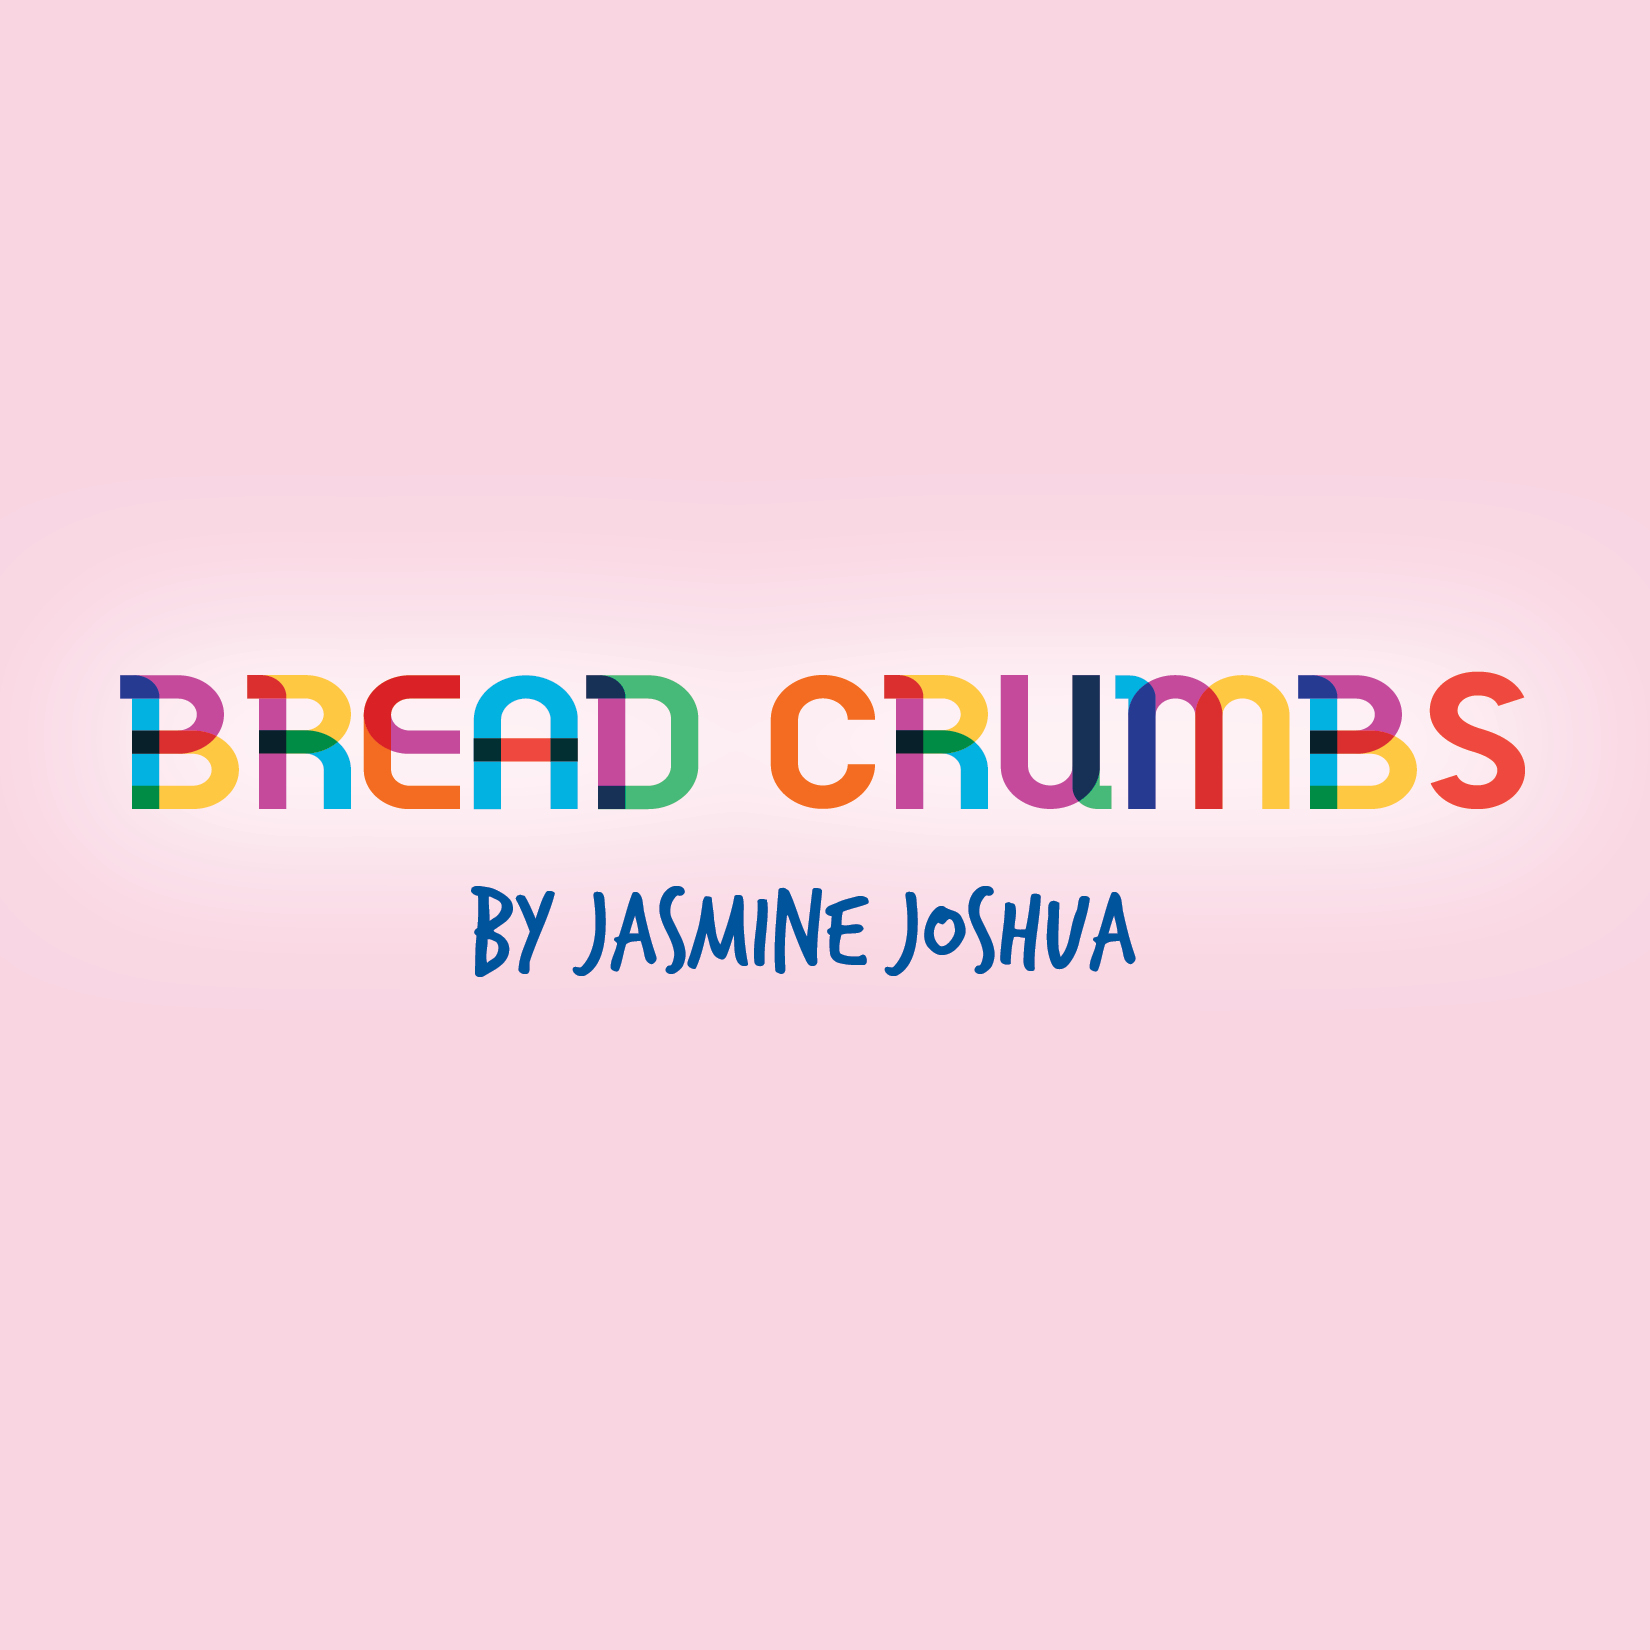 Bread Crumbs by Jasmine Joshua